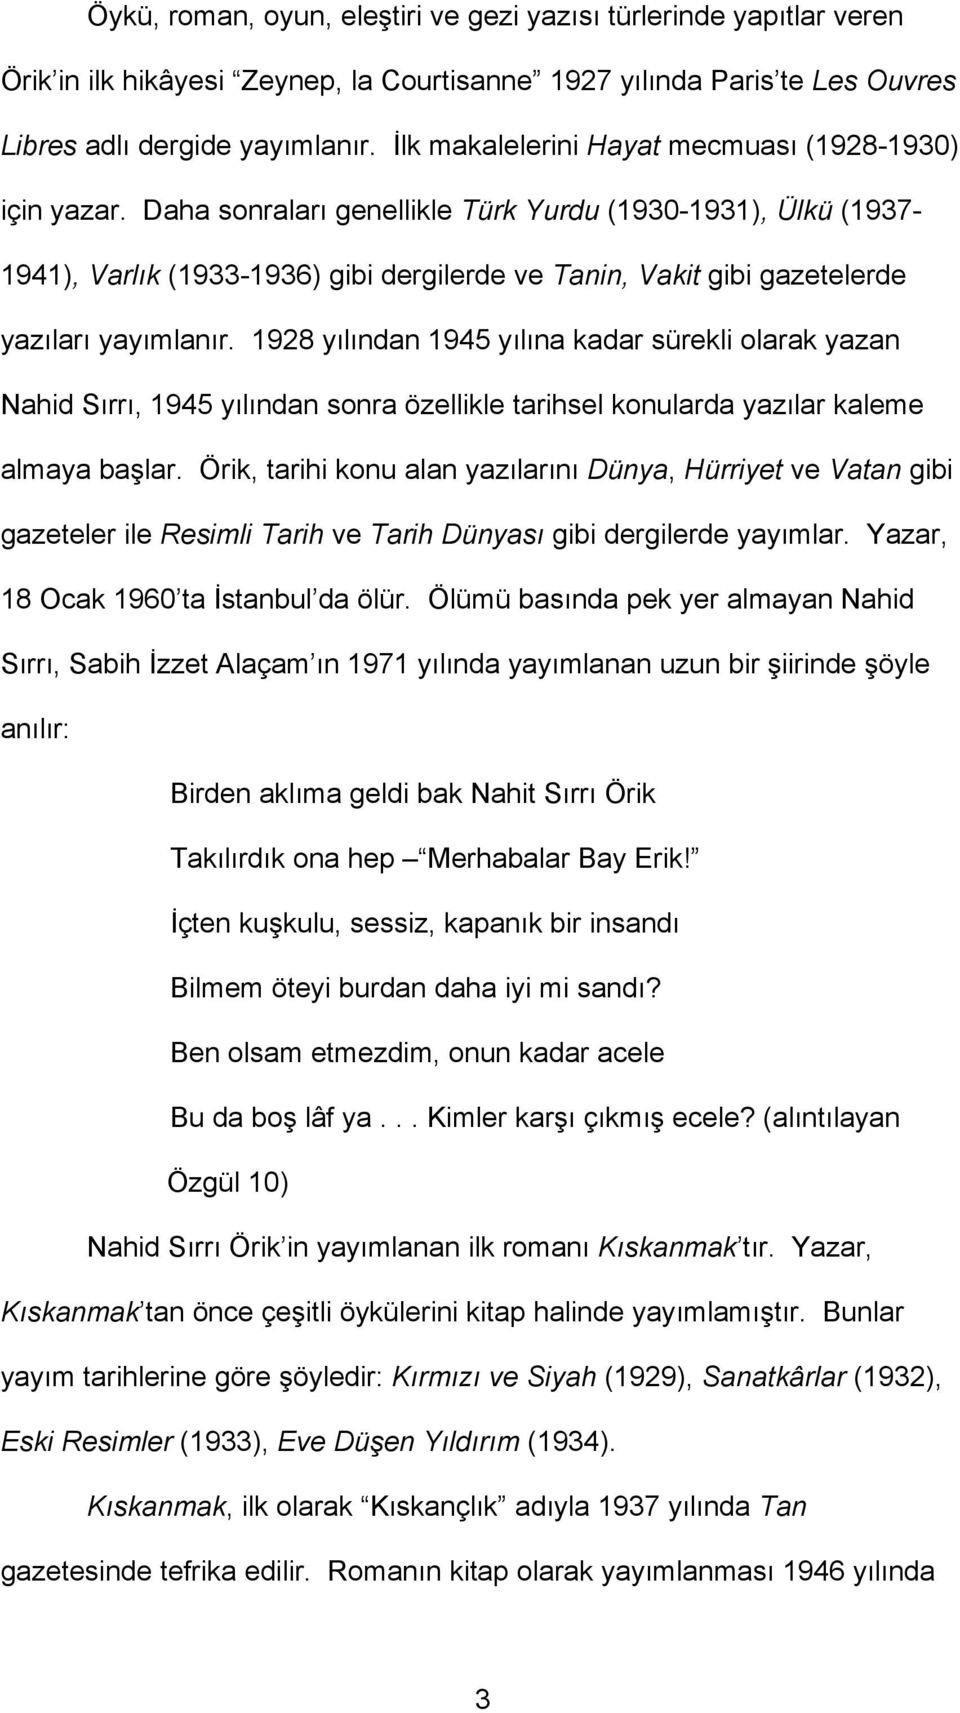 Daha sonraları genellikle Türk Yurdu (1930-1931), Ülkü (1937-1941), Varlık (1933-1936) gibi dergilerde ve Tanin, Vakit gibi gazetelerde yazıları yayımlanır.